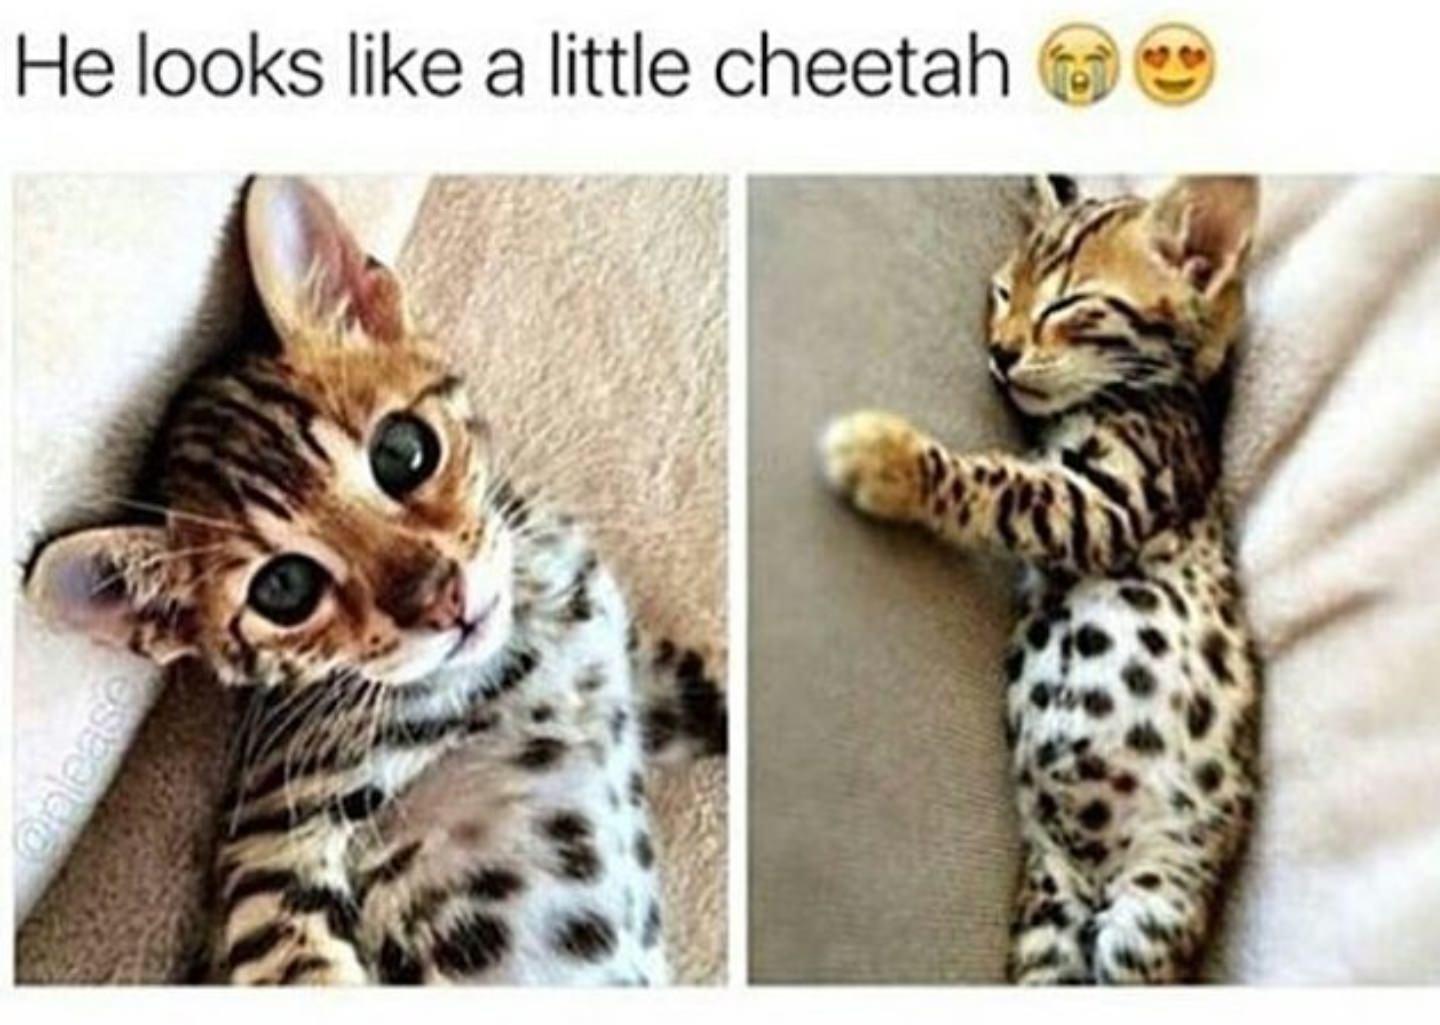 dank memes - fauna - He looks a little cheetah